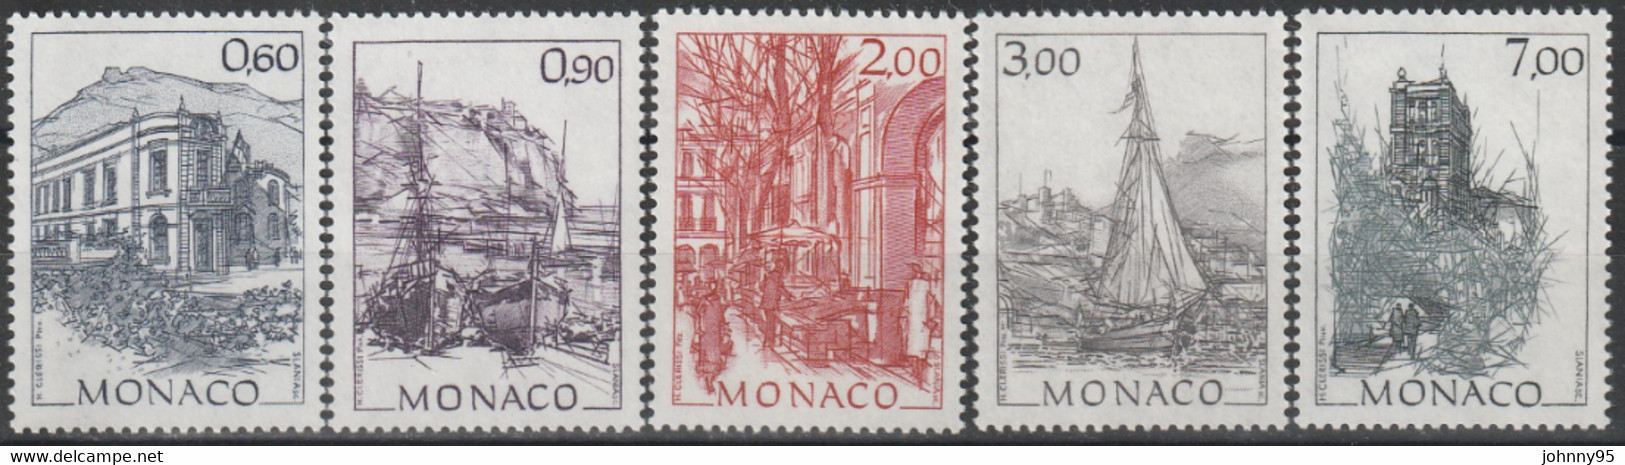 Année 1992 - N° 1834 à 1838 - Monaco D'autrefois : Oeuvres Du Peintre Hubert Clerissi - Série 5 Valeurs - Neufs